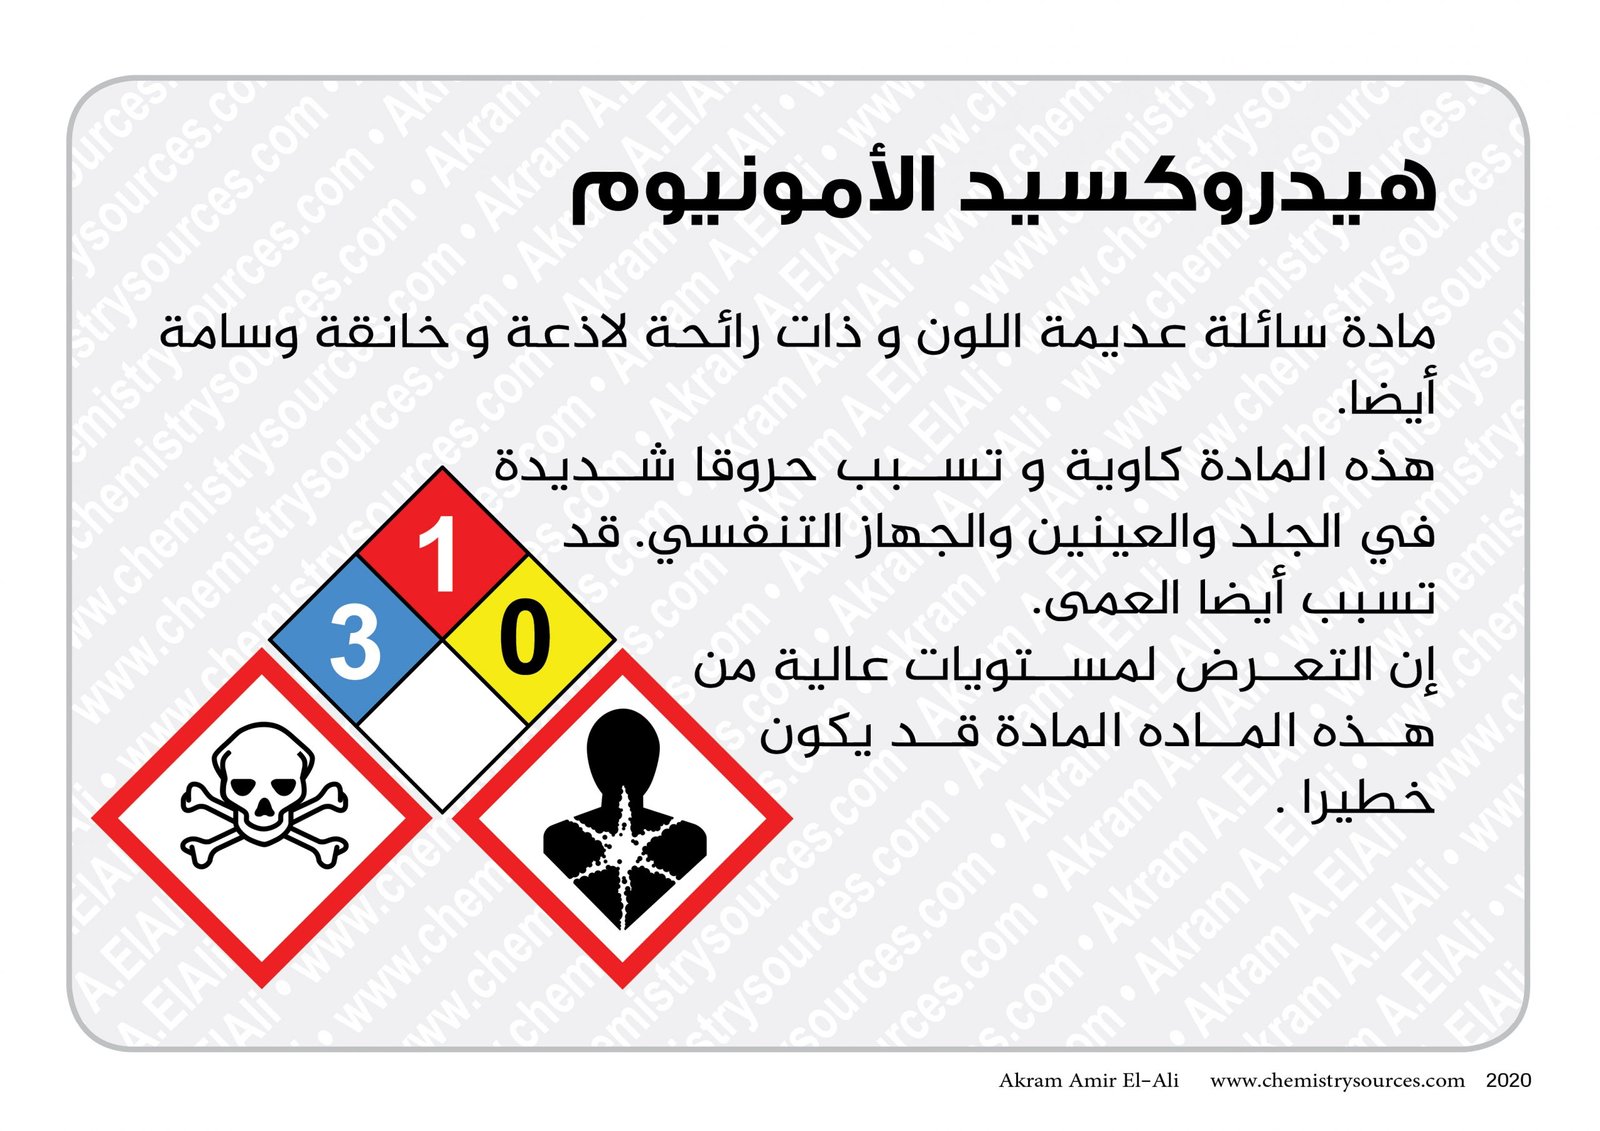 بطاقات اخطار المواد الكيميائية المختصرة5 scaled